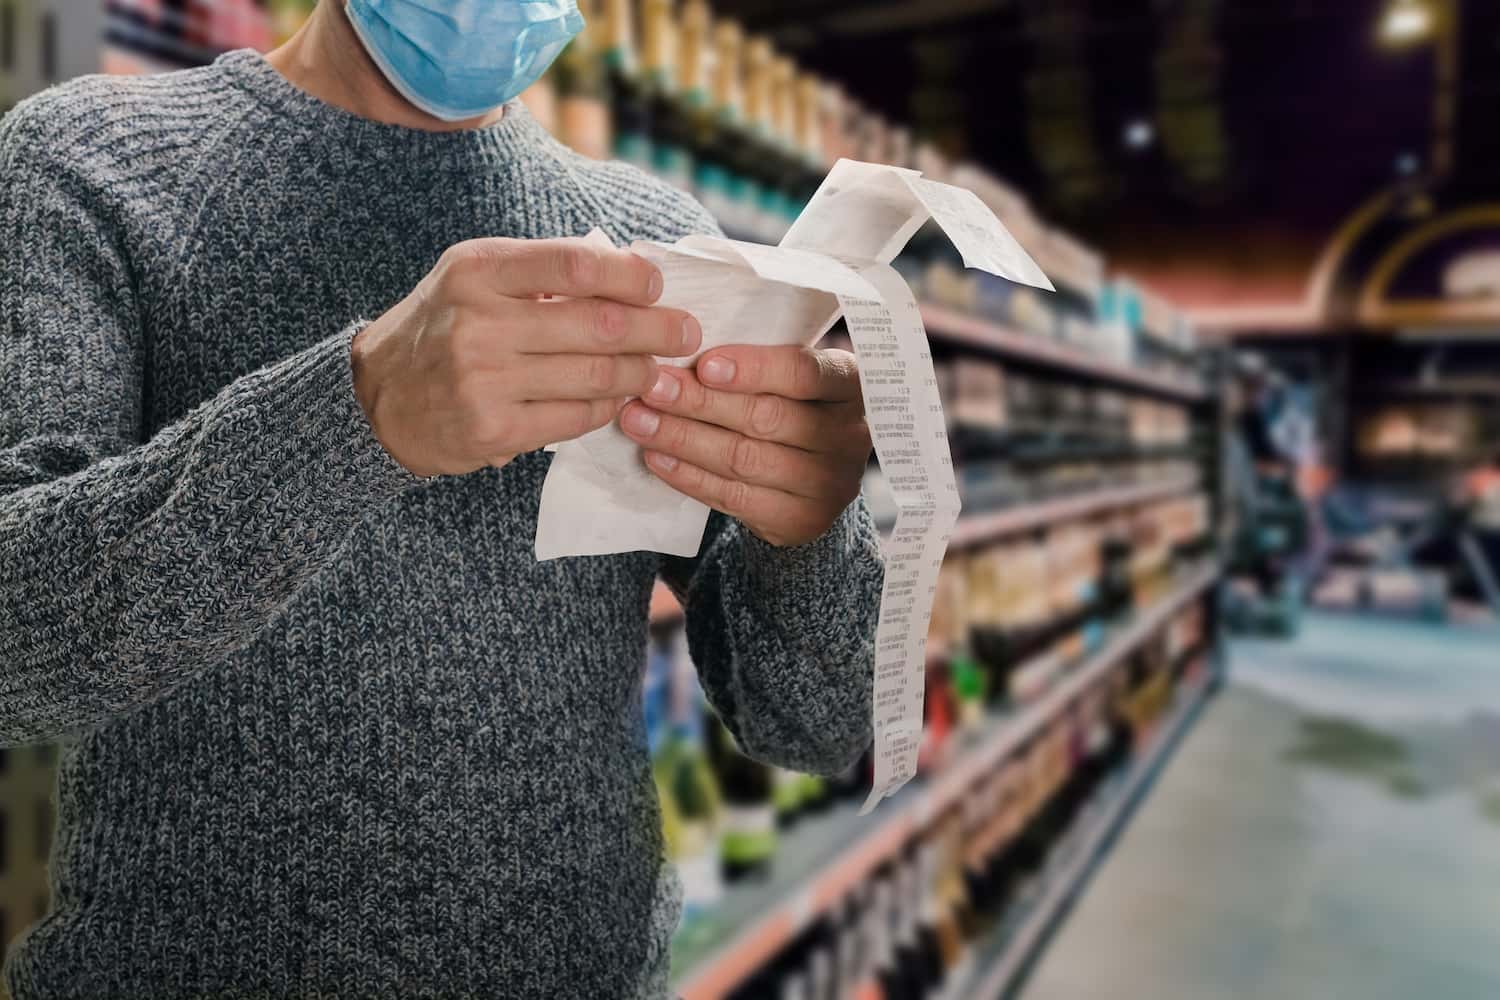 Homem branco, usando uma blusa de frio cinza e uma máscara azul, está em um supermercado lendo a nota fiscal de sua compra.